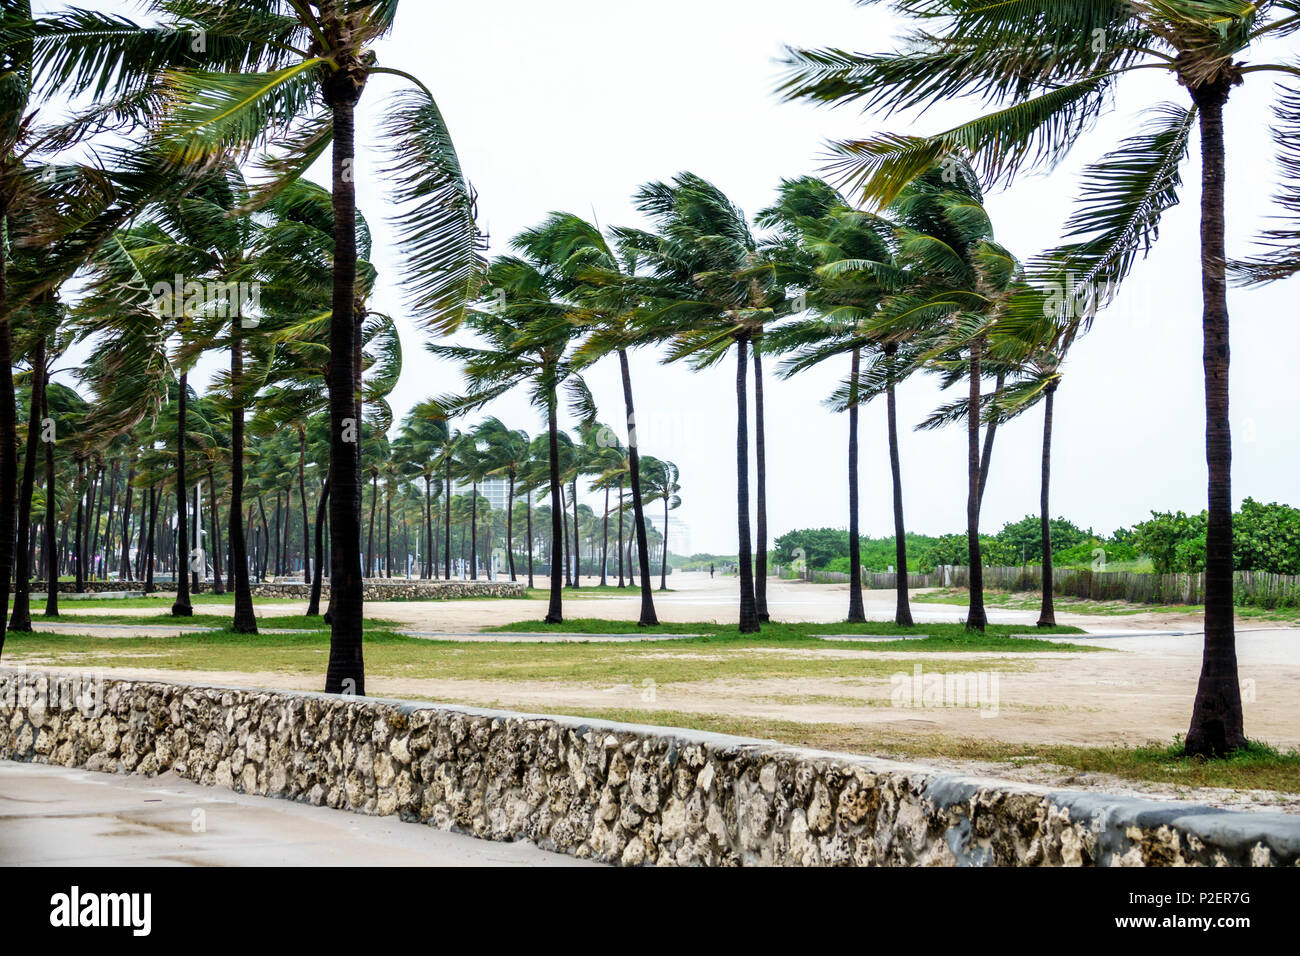 Miami Beach, Florida, Lummus Park, Hurrikan Irma, tropische Sturmwinde, Palmen, die sich biegende Wedel wehen, die leer und menschenleer windig sind Stockfoto